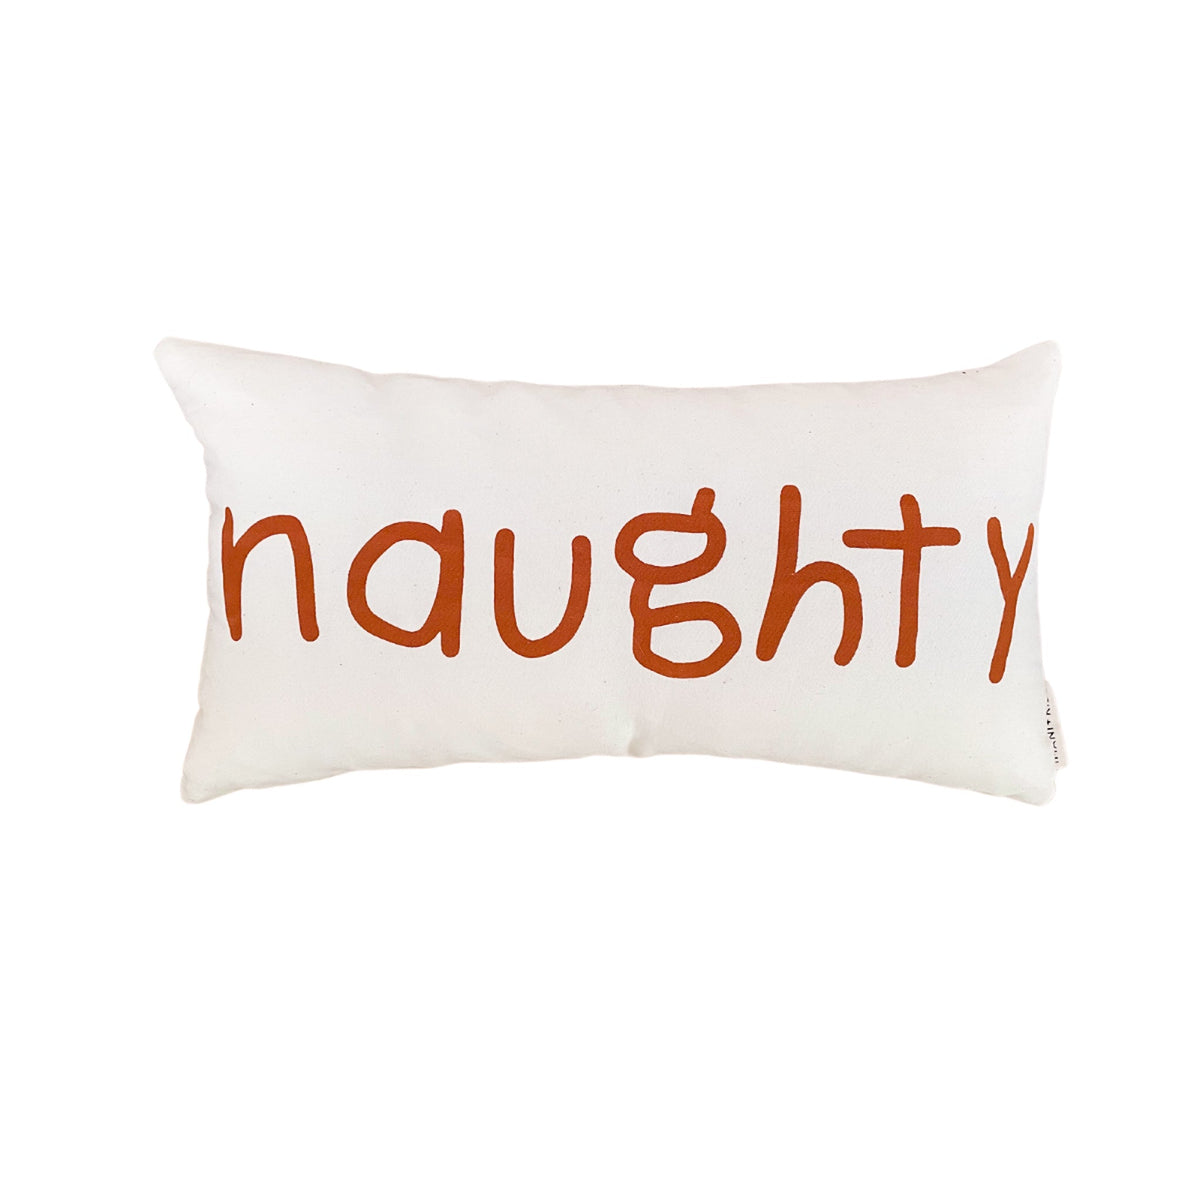 Naughty + Nice Lumbar Pillow Cover